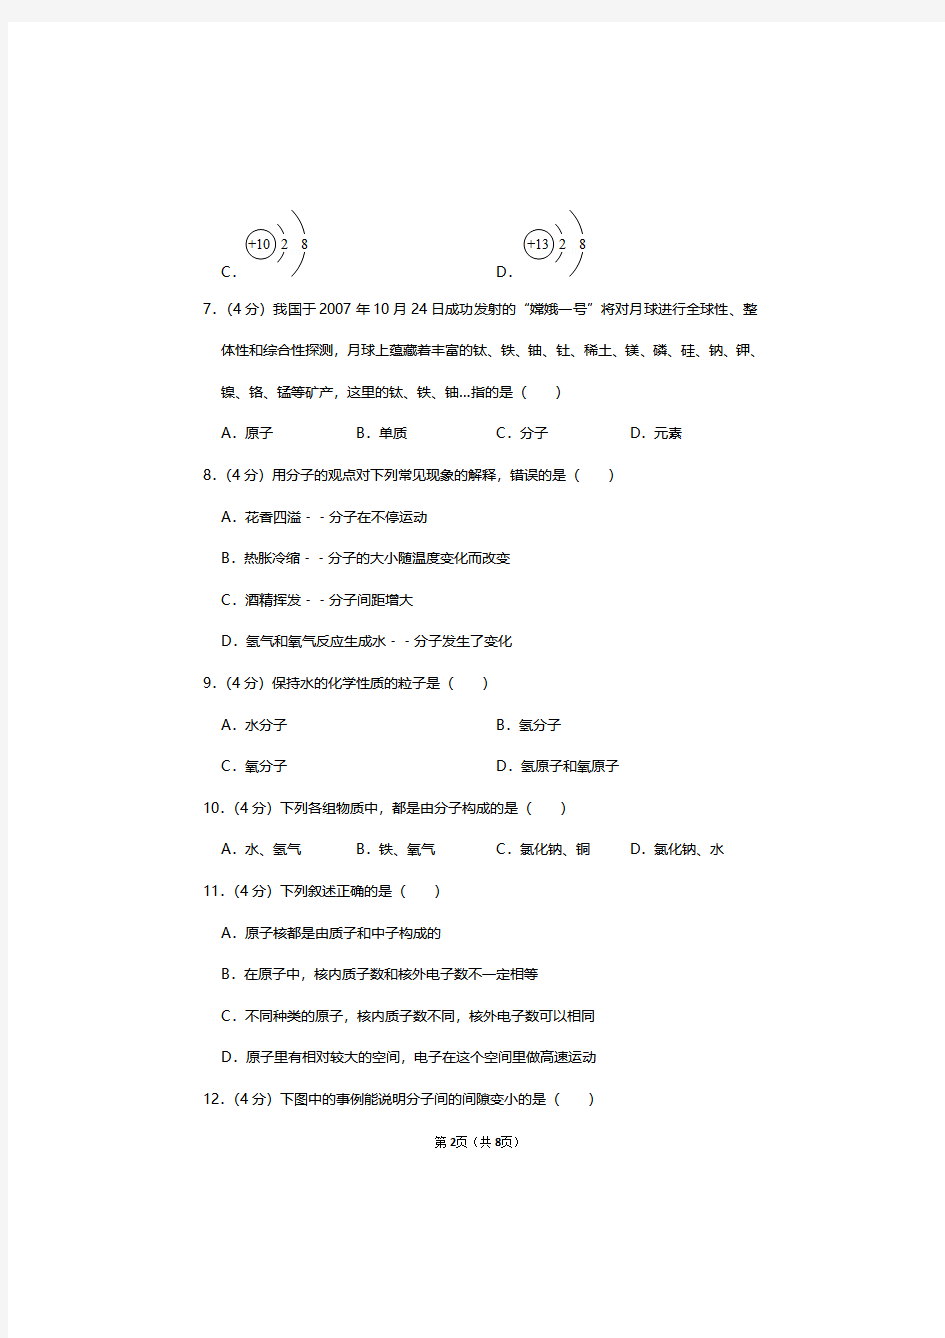 南京金陵中学2020-2021九年级化学上册第3章《物质构成的奥秘》单元测试卷及答案解析